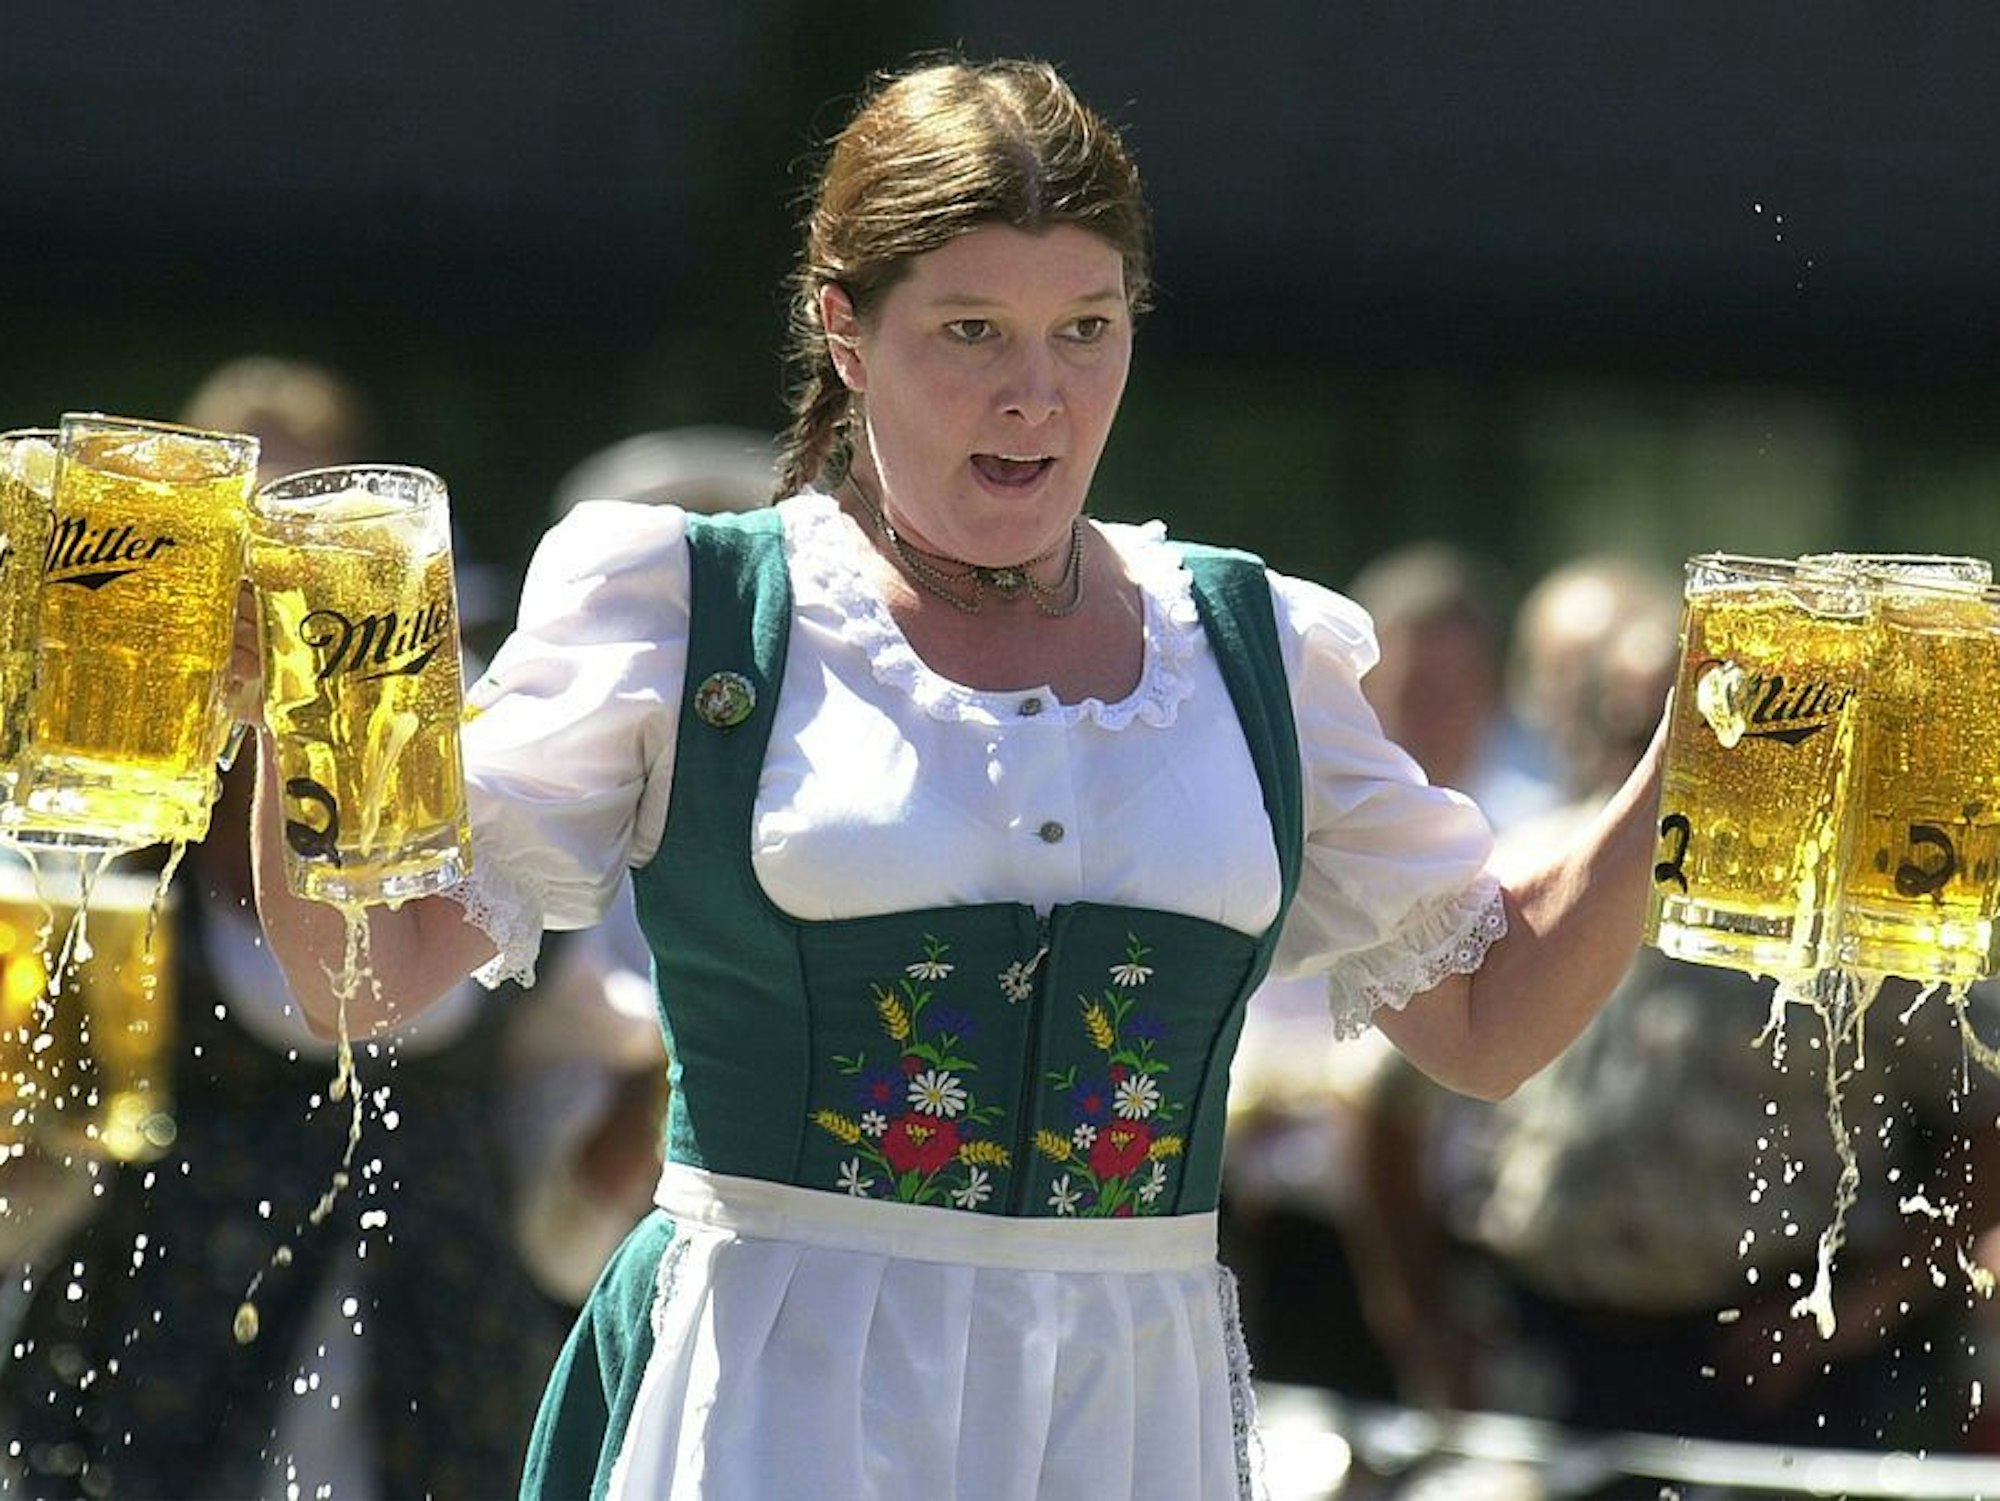 Eine Frau im Dirndl trägt sechs Krüge mit Bier.